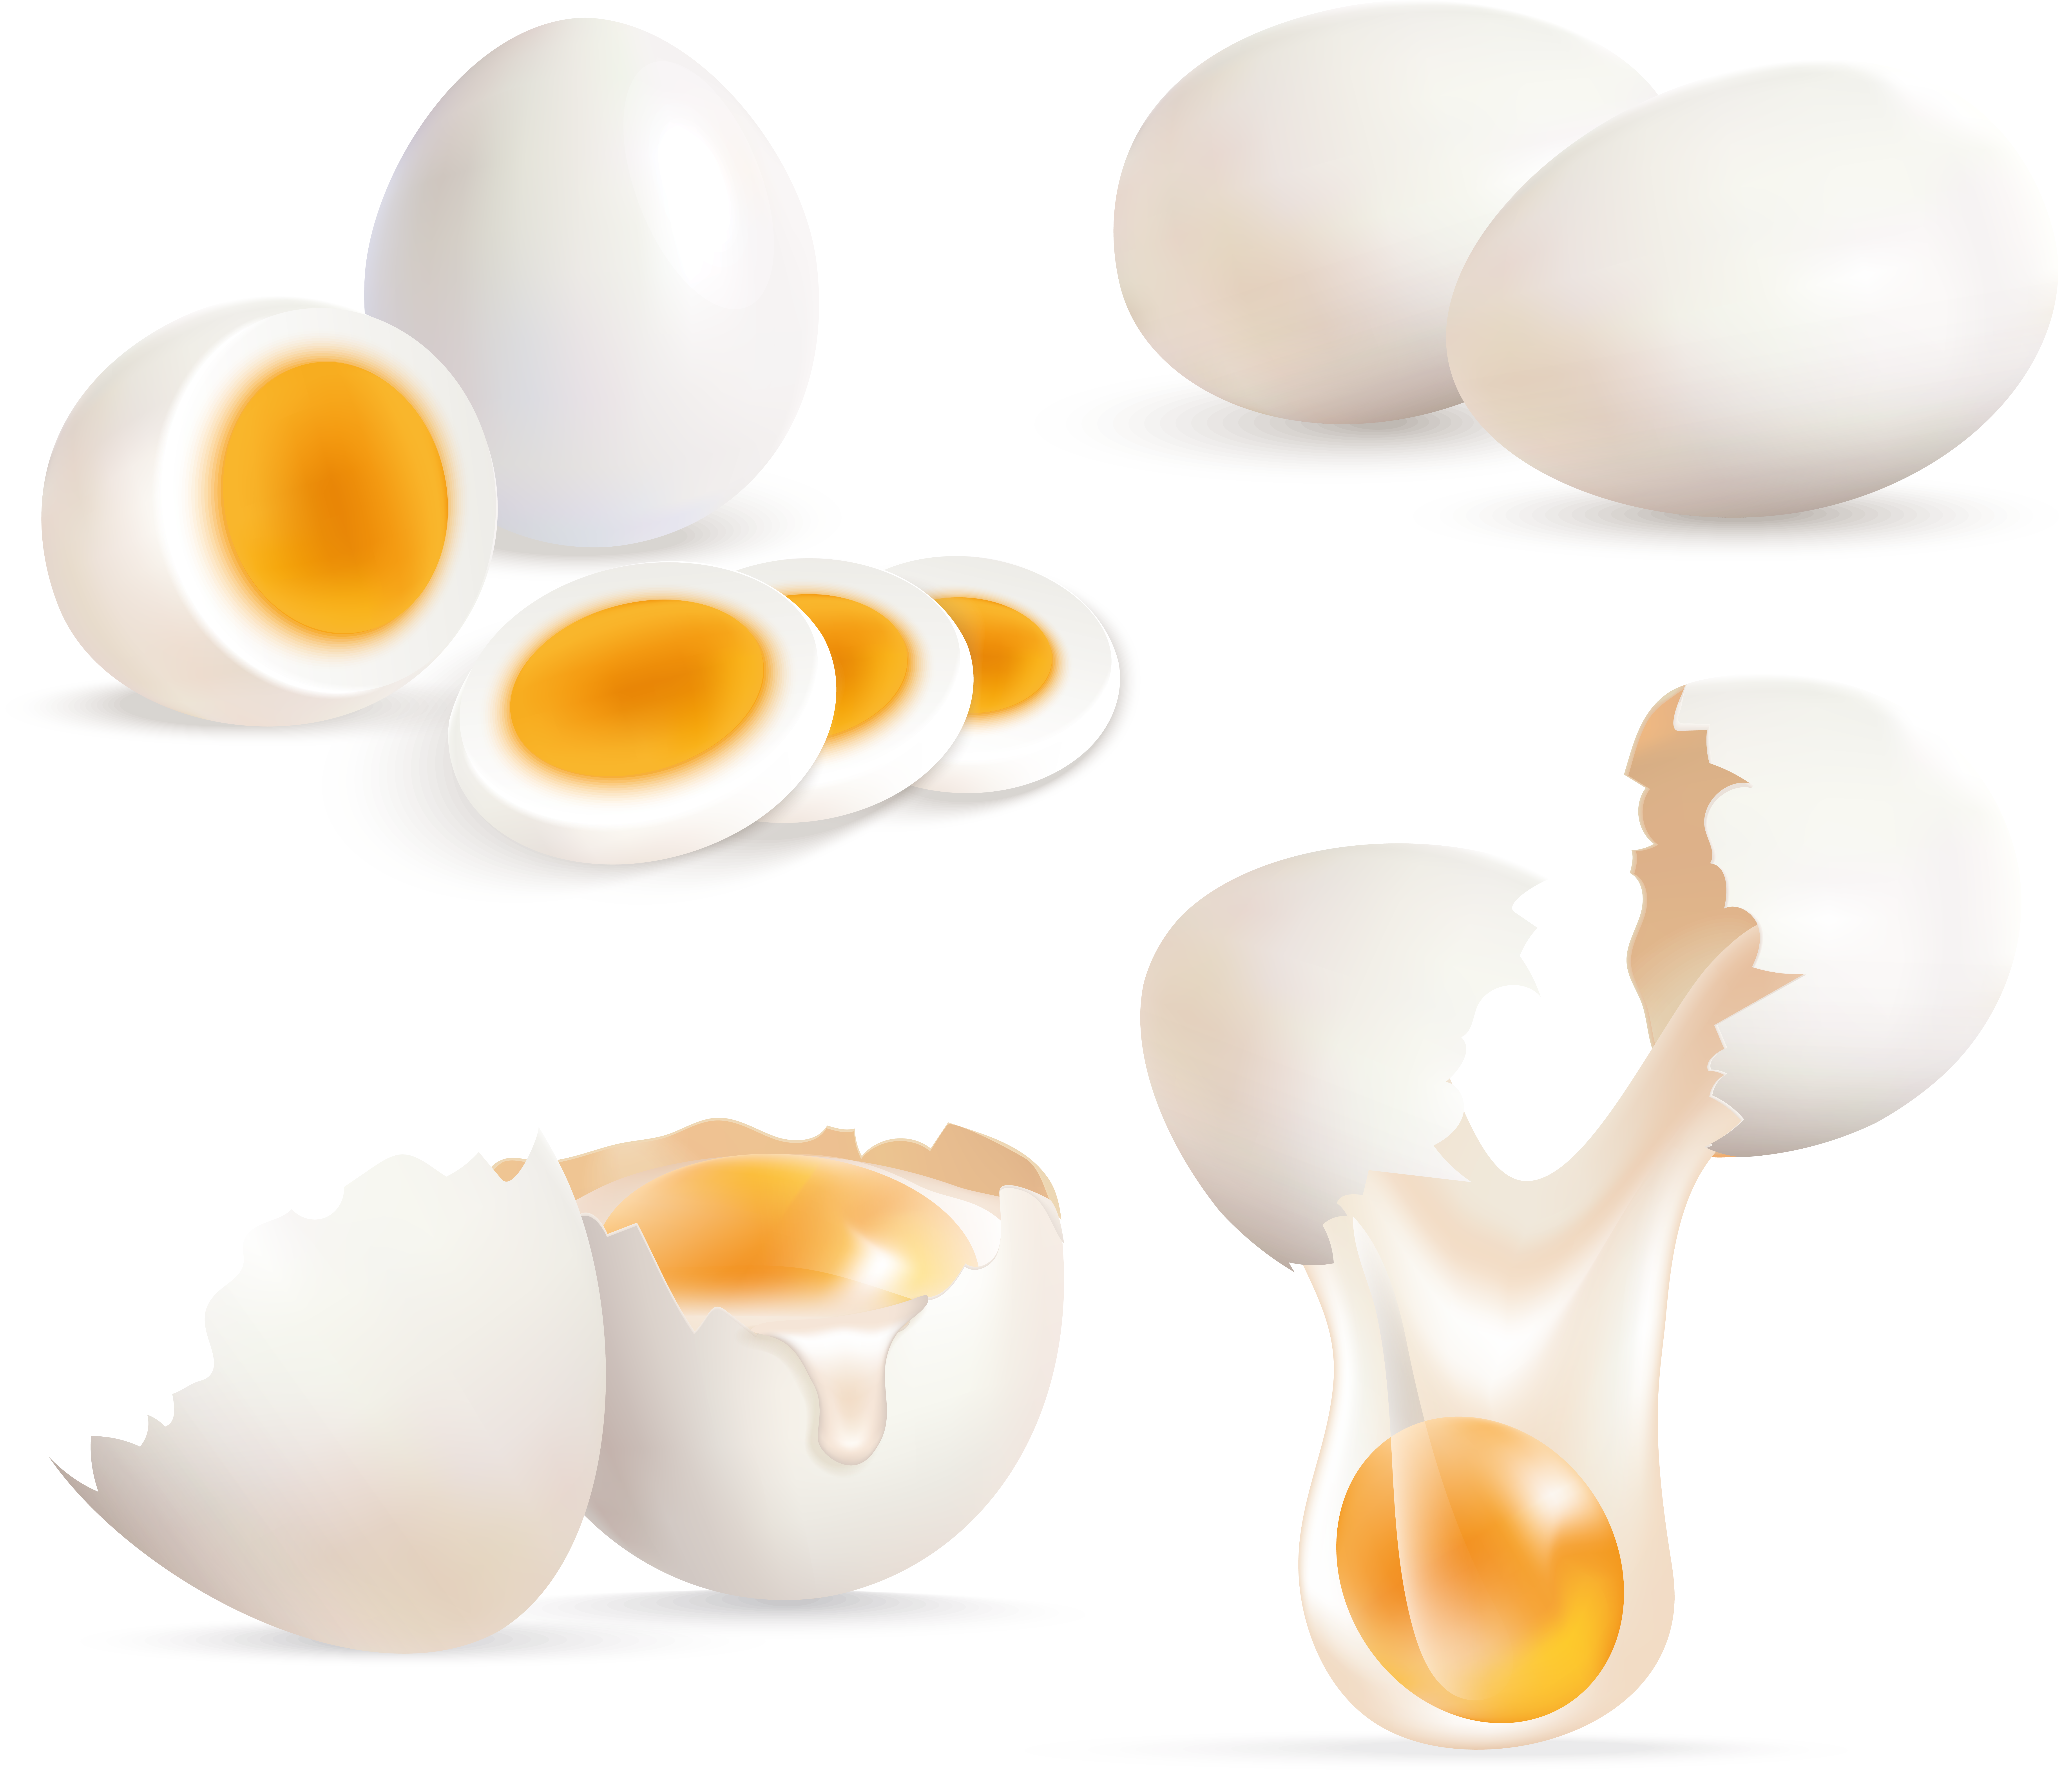 Uovo incrinato, uovo tagliato